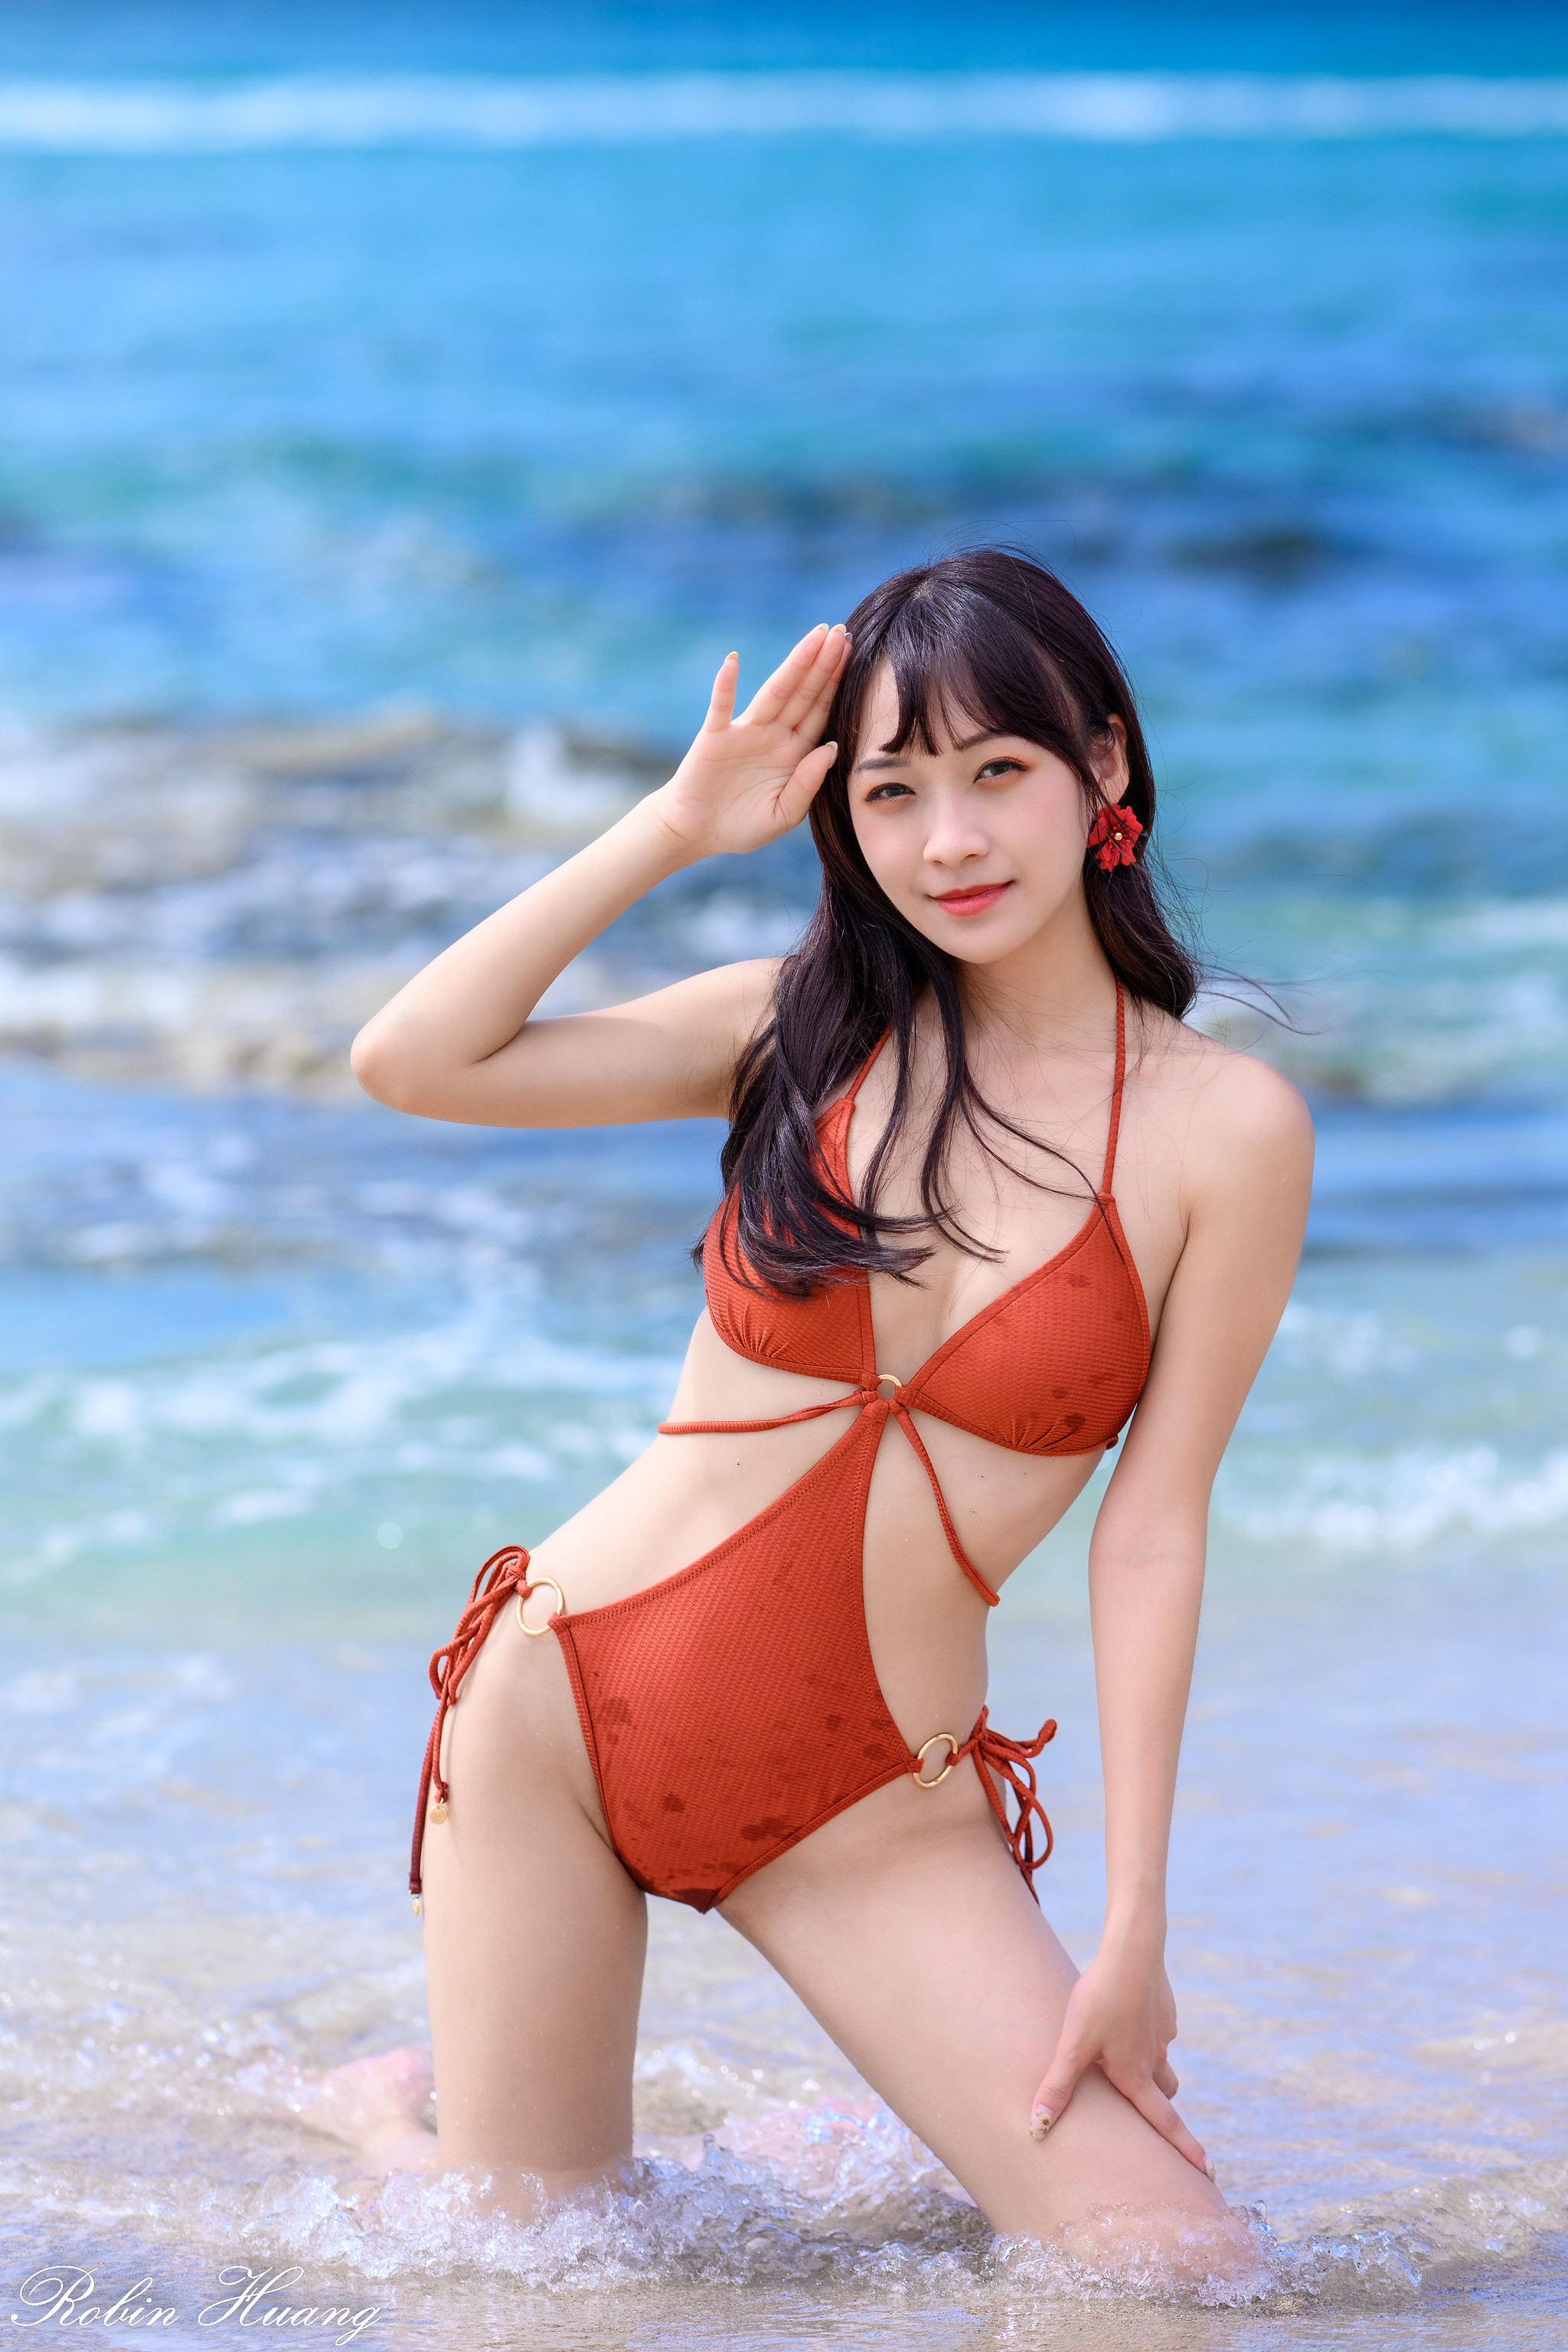 People 2048x3072 Robin Huang women Asian dark hair swimwear orange clothing beach makeup